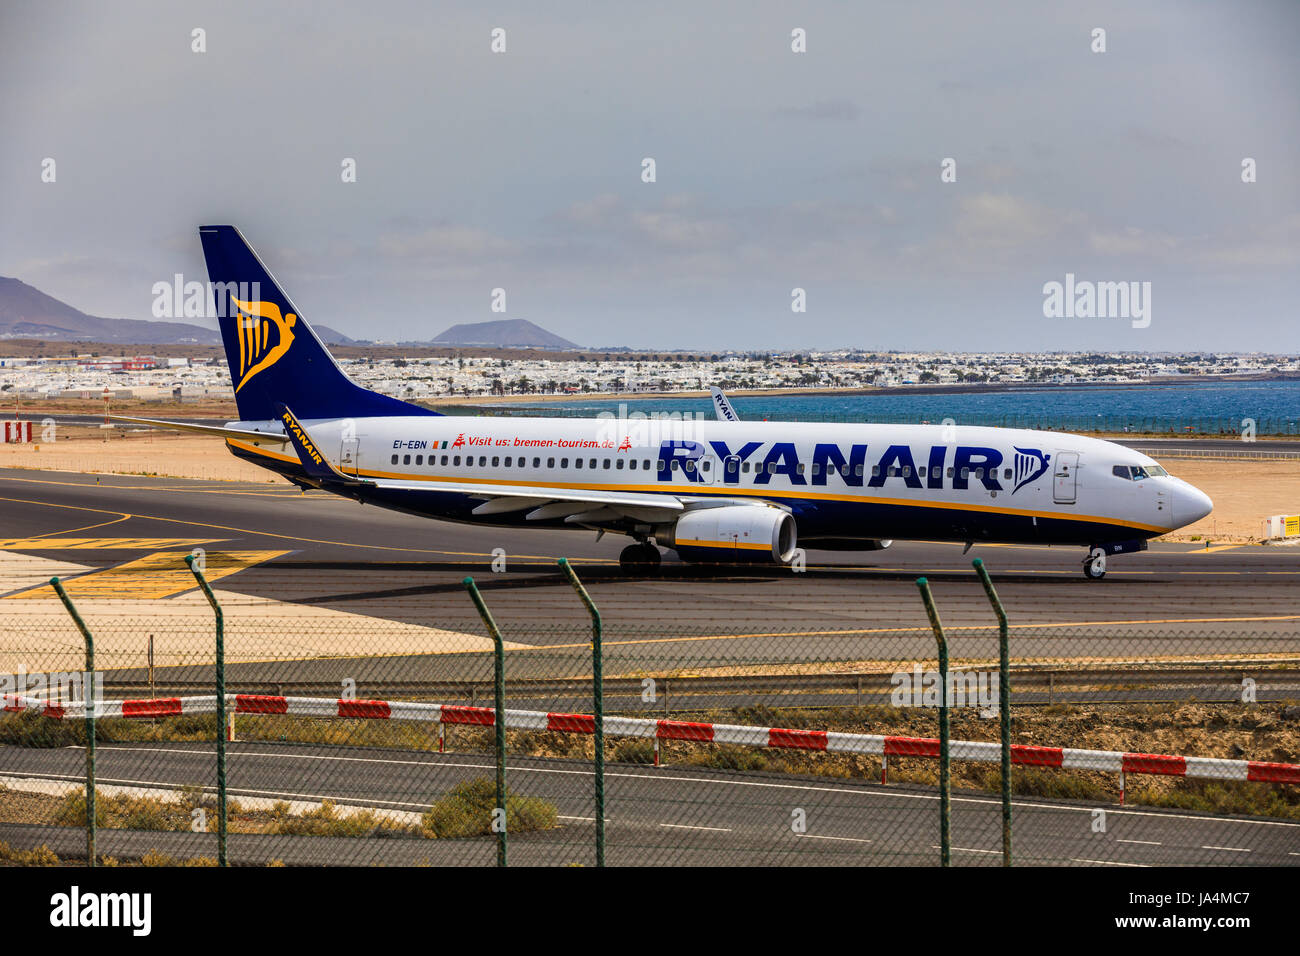 ARECIFE, Spagna - Aprile 15 2017: Boeing 737-800 di Ryanair con la registrazione EI-EBN pronto al decollo a Lanzarote Airport Foto Stock